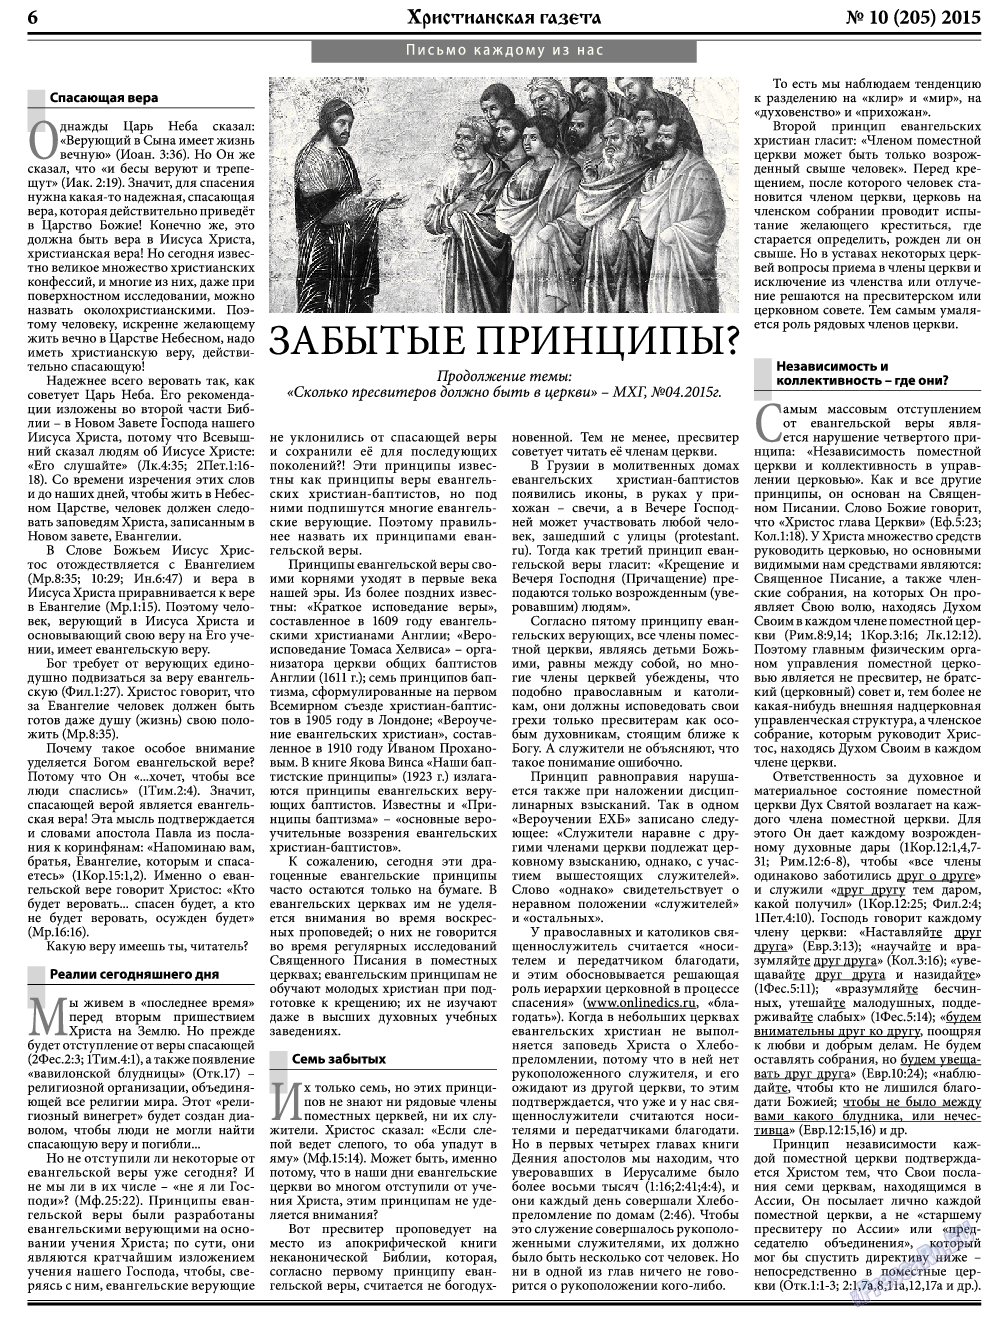 Христианская газета, газета. 2015 №10 стр.6